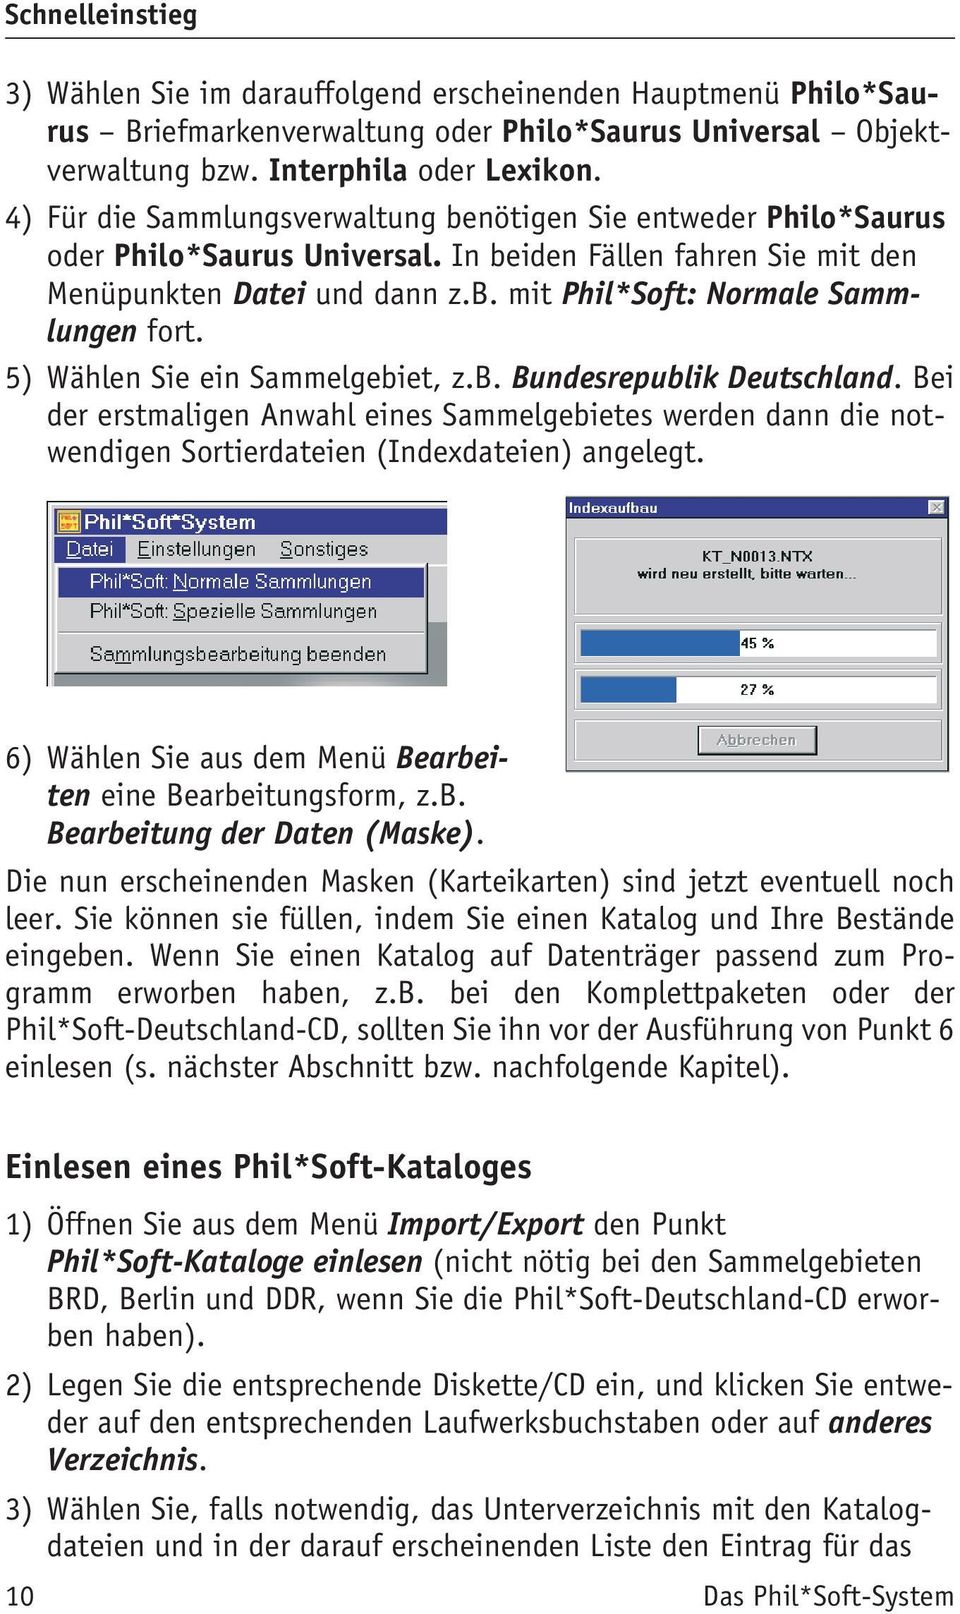 5) Wählen Sie ein Sammelgebiet, z.b. Bundesrepublik Deutschland. Bei der erstmaligen Anwahl eines Sammelgebietes werden dann die notwendigen Sortierdateien (Indexdateien) angelegt.